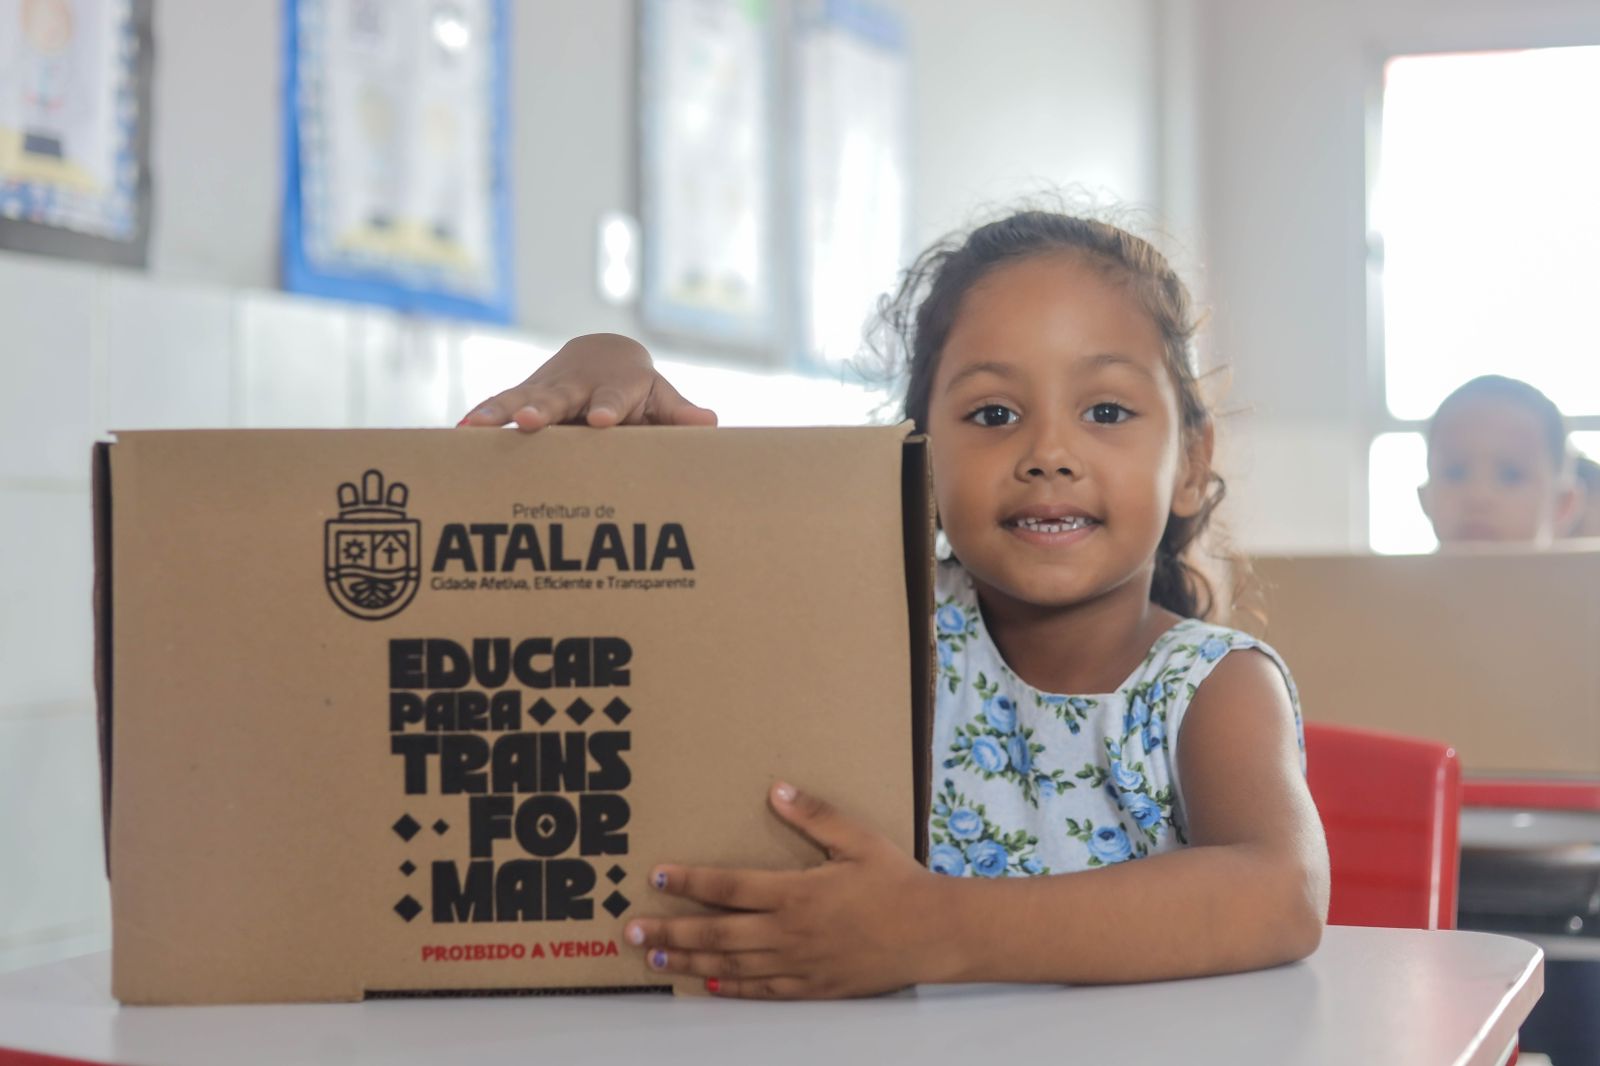 Prefeitura de Atalaia inicia entrega de kits escolares: “educação que transforma”, diz Ceci